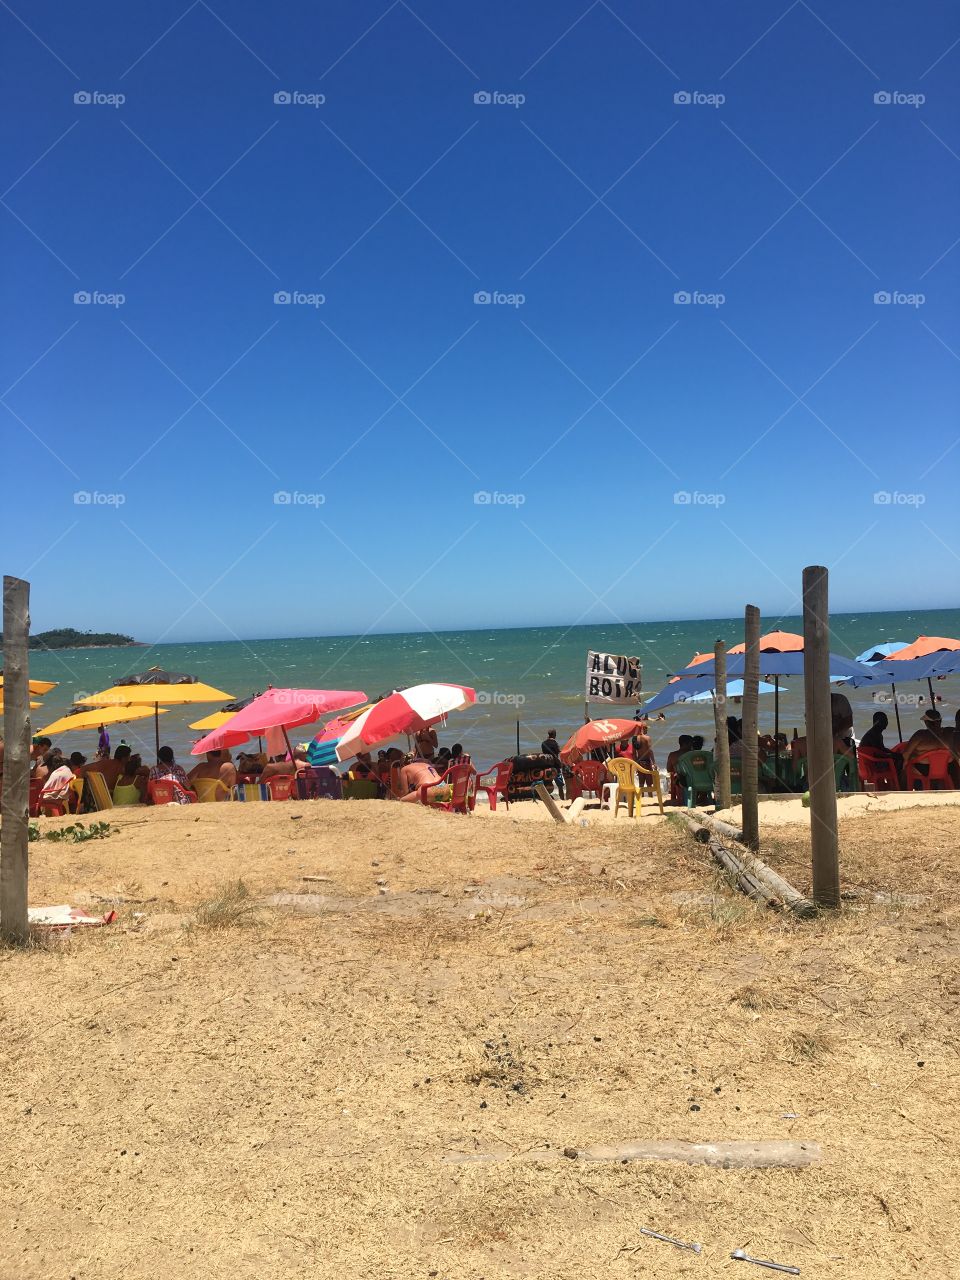 Uma praia típica brasileira lotada no verão, época de férias. 